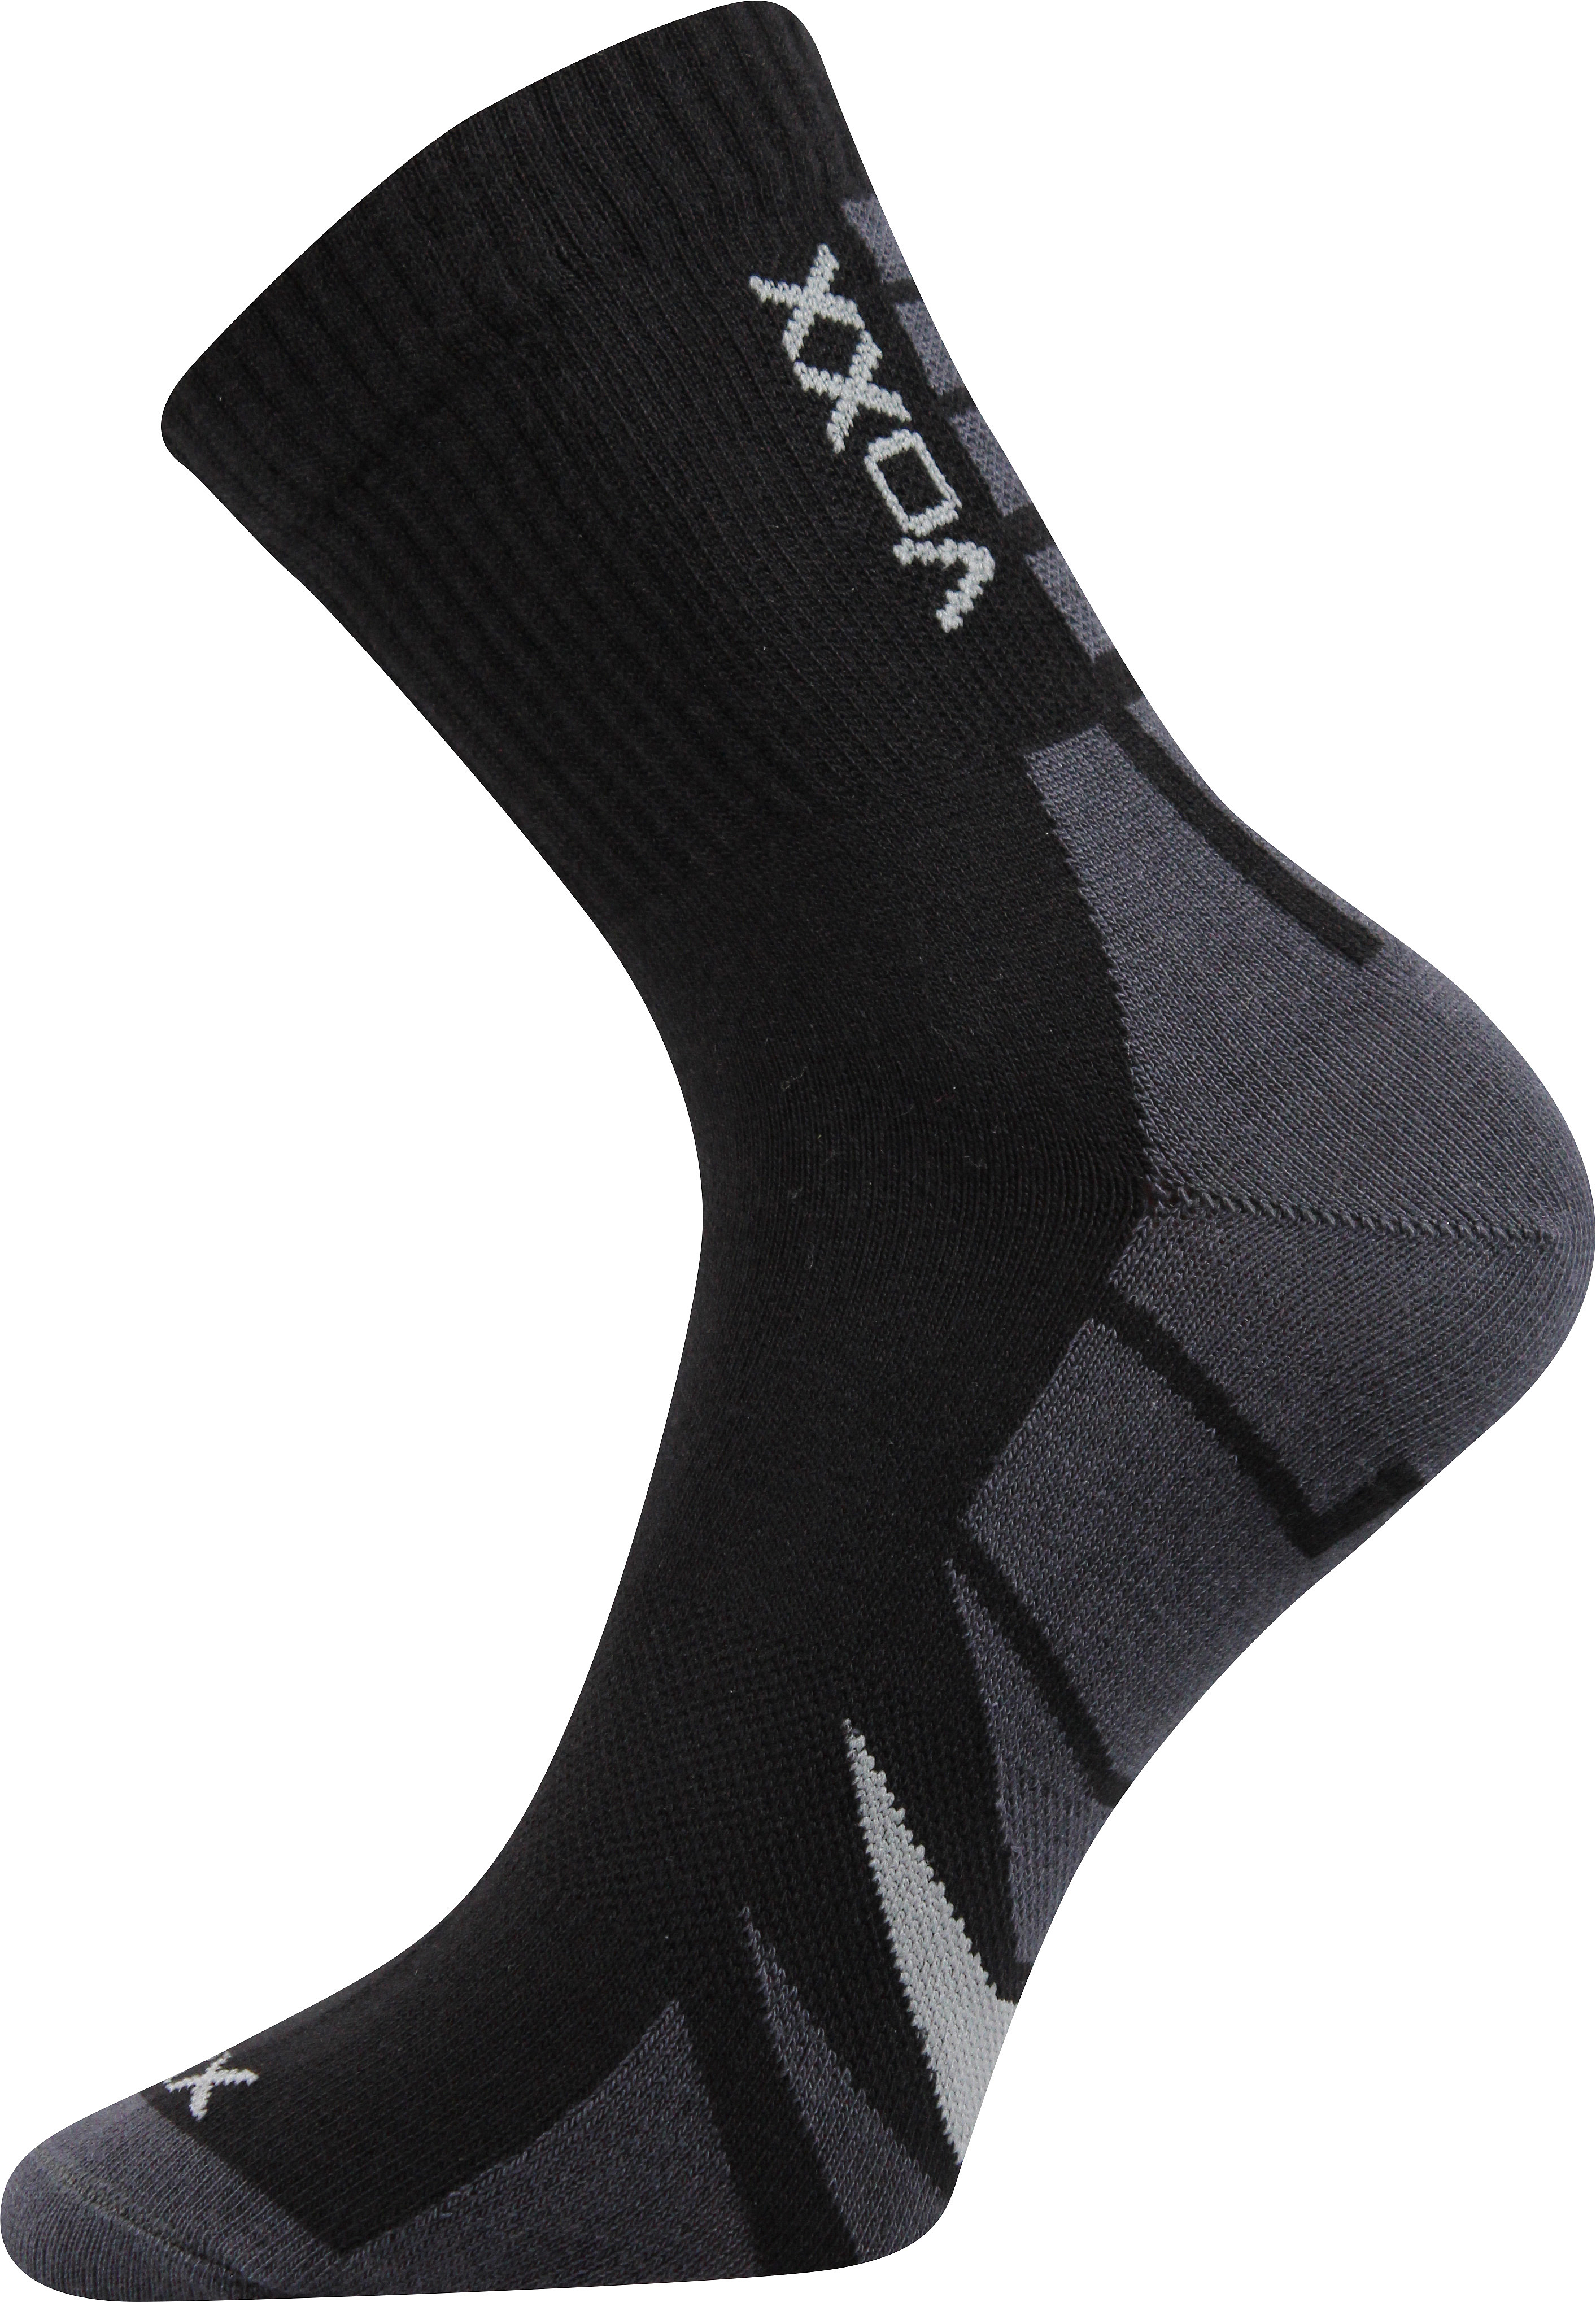 Ponožky sportovní Voxx Hermes - černé-šedé, 43-46